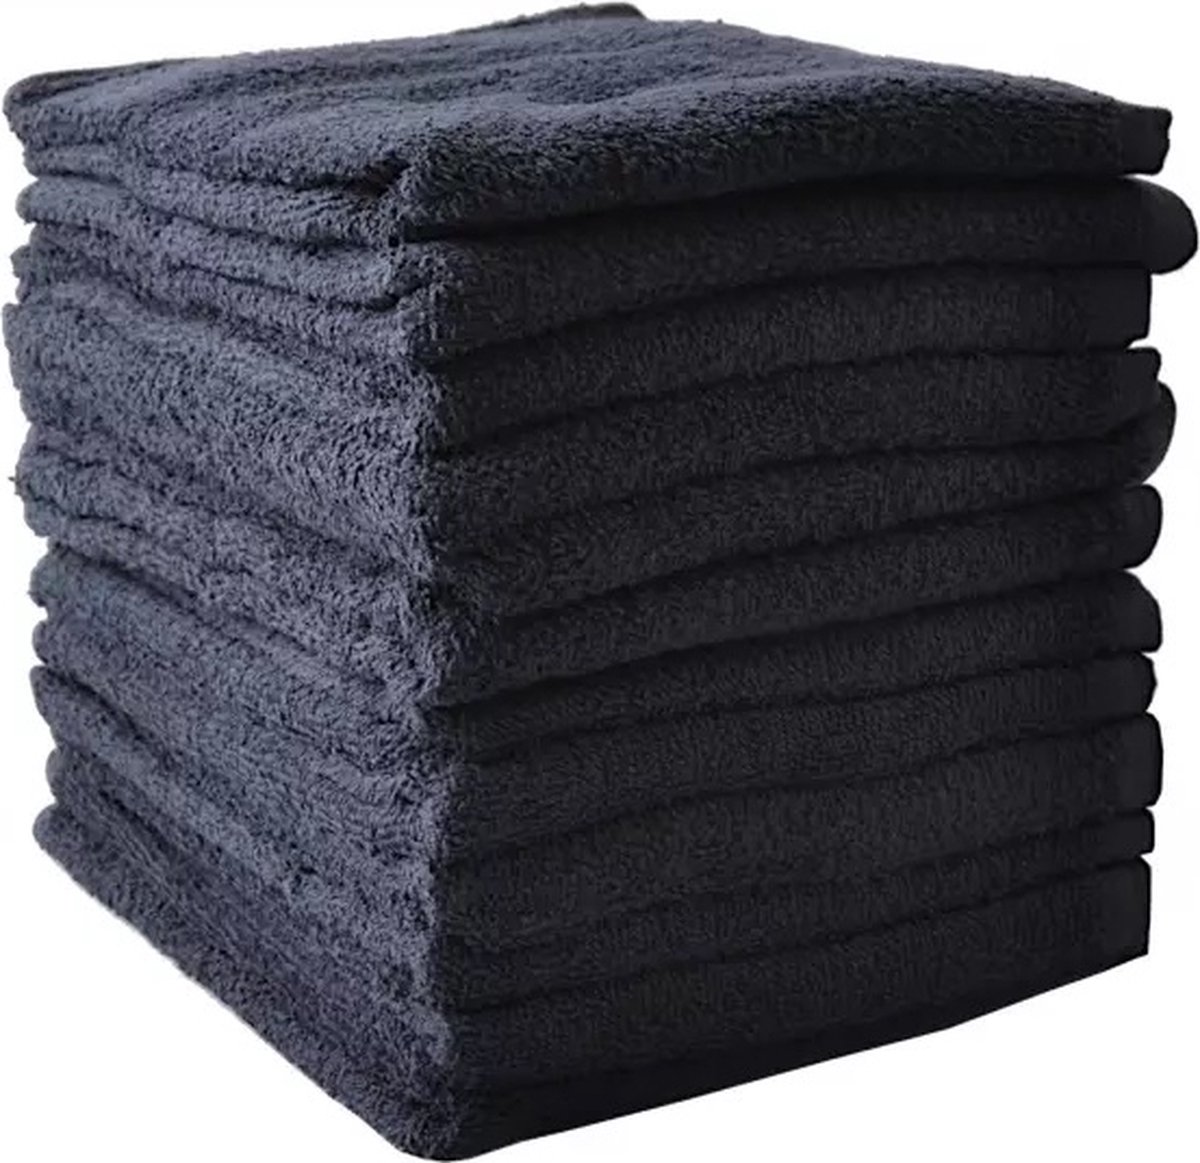 Katoenen Handdoeken 50X80Cm Zwart 12 stuks Sibel Invincible